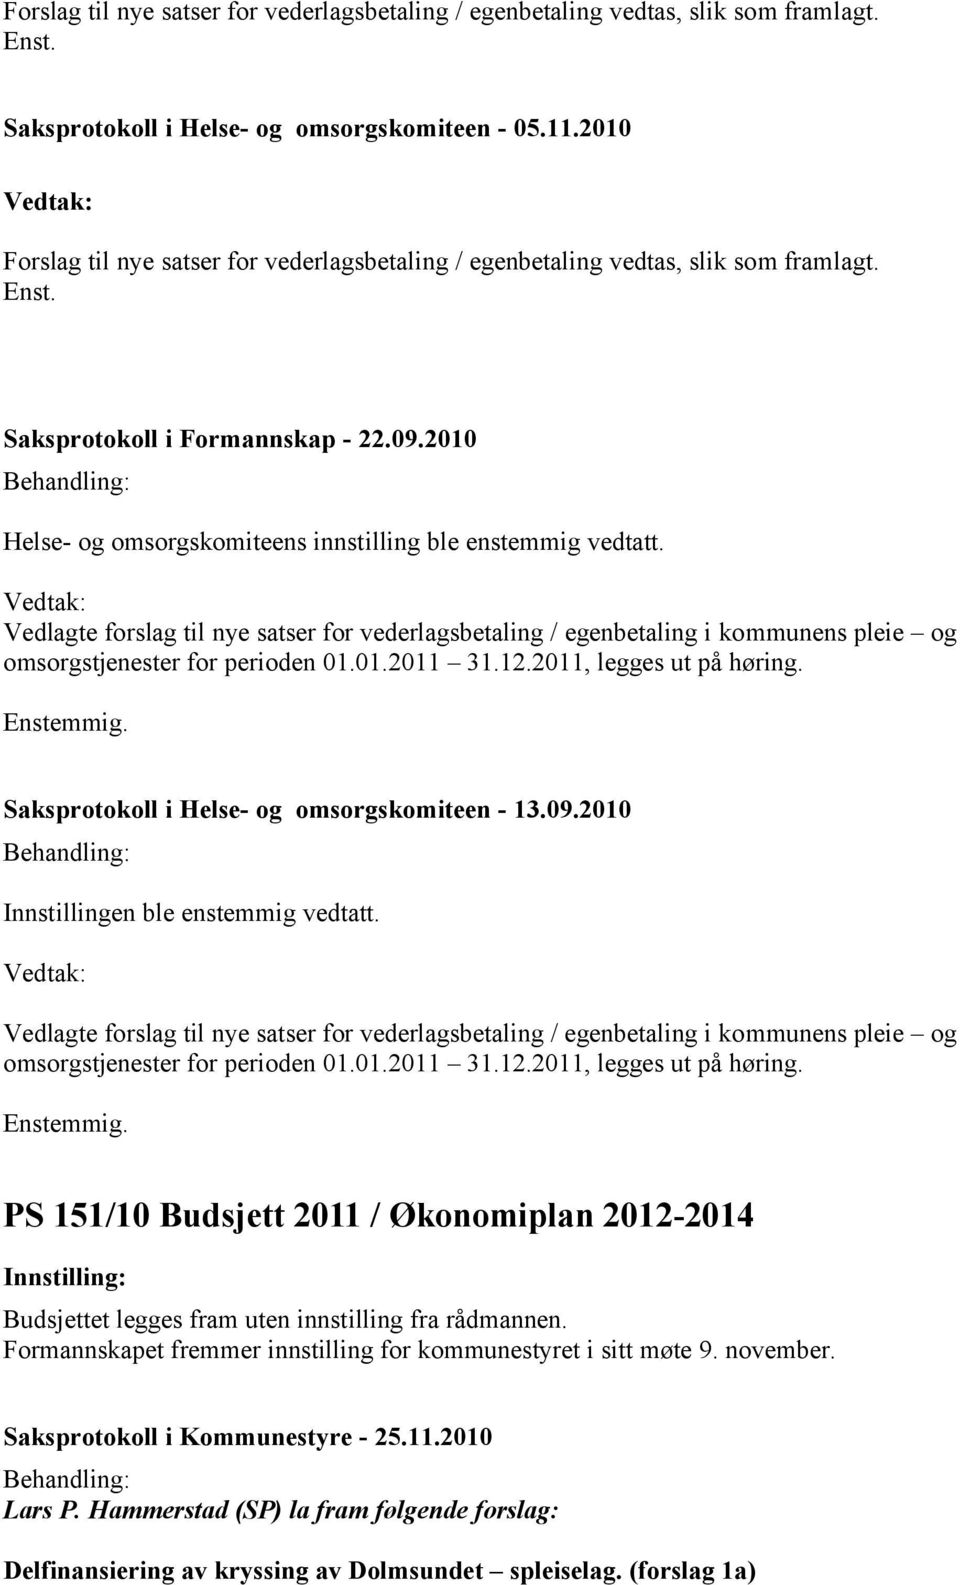 Vedlagte forslag til nye satser for vederlagsbetaling / egenbetaling i kommunens pleie og omsorgstjenester for perioden 01.01.2011 31.12.2011, legges ut på høring.